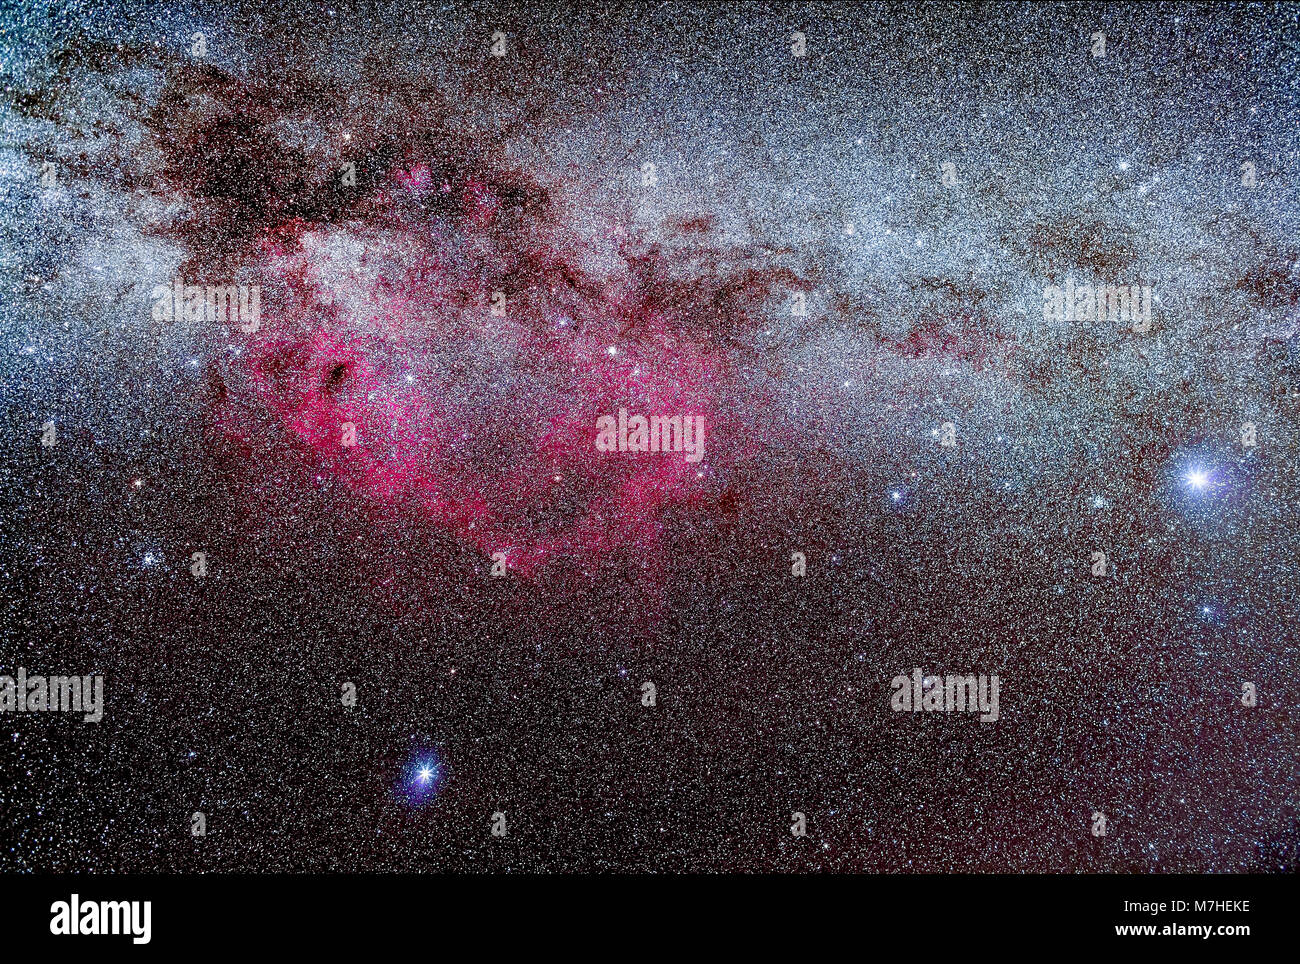 Sirius, Canopus and the Gum Nebula. Stock Photo